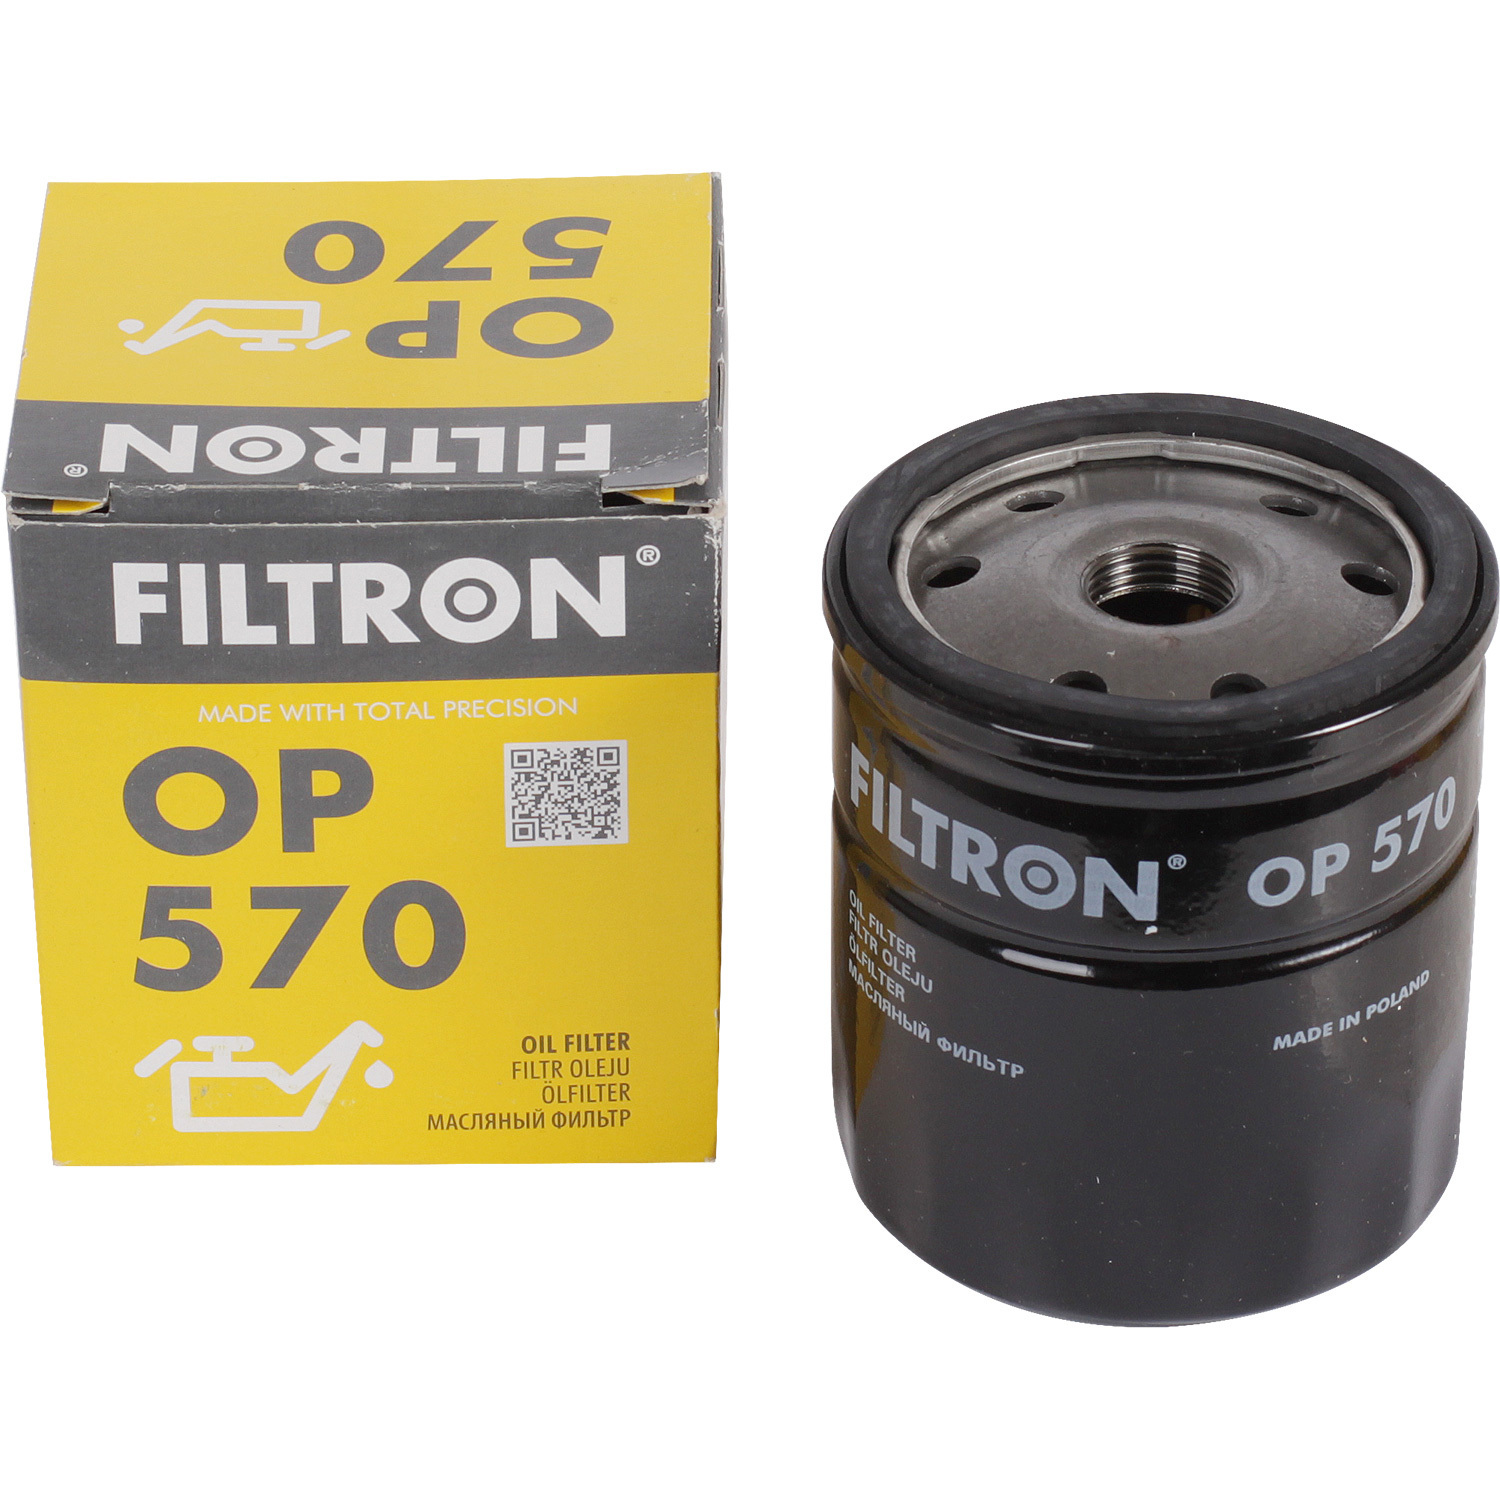 фильтры filtron фильтр масляный filtron op595 Фильтры Filtron Фильтр масляный Filtron OP570